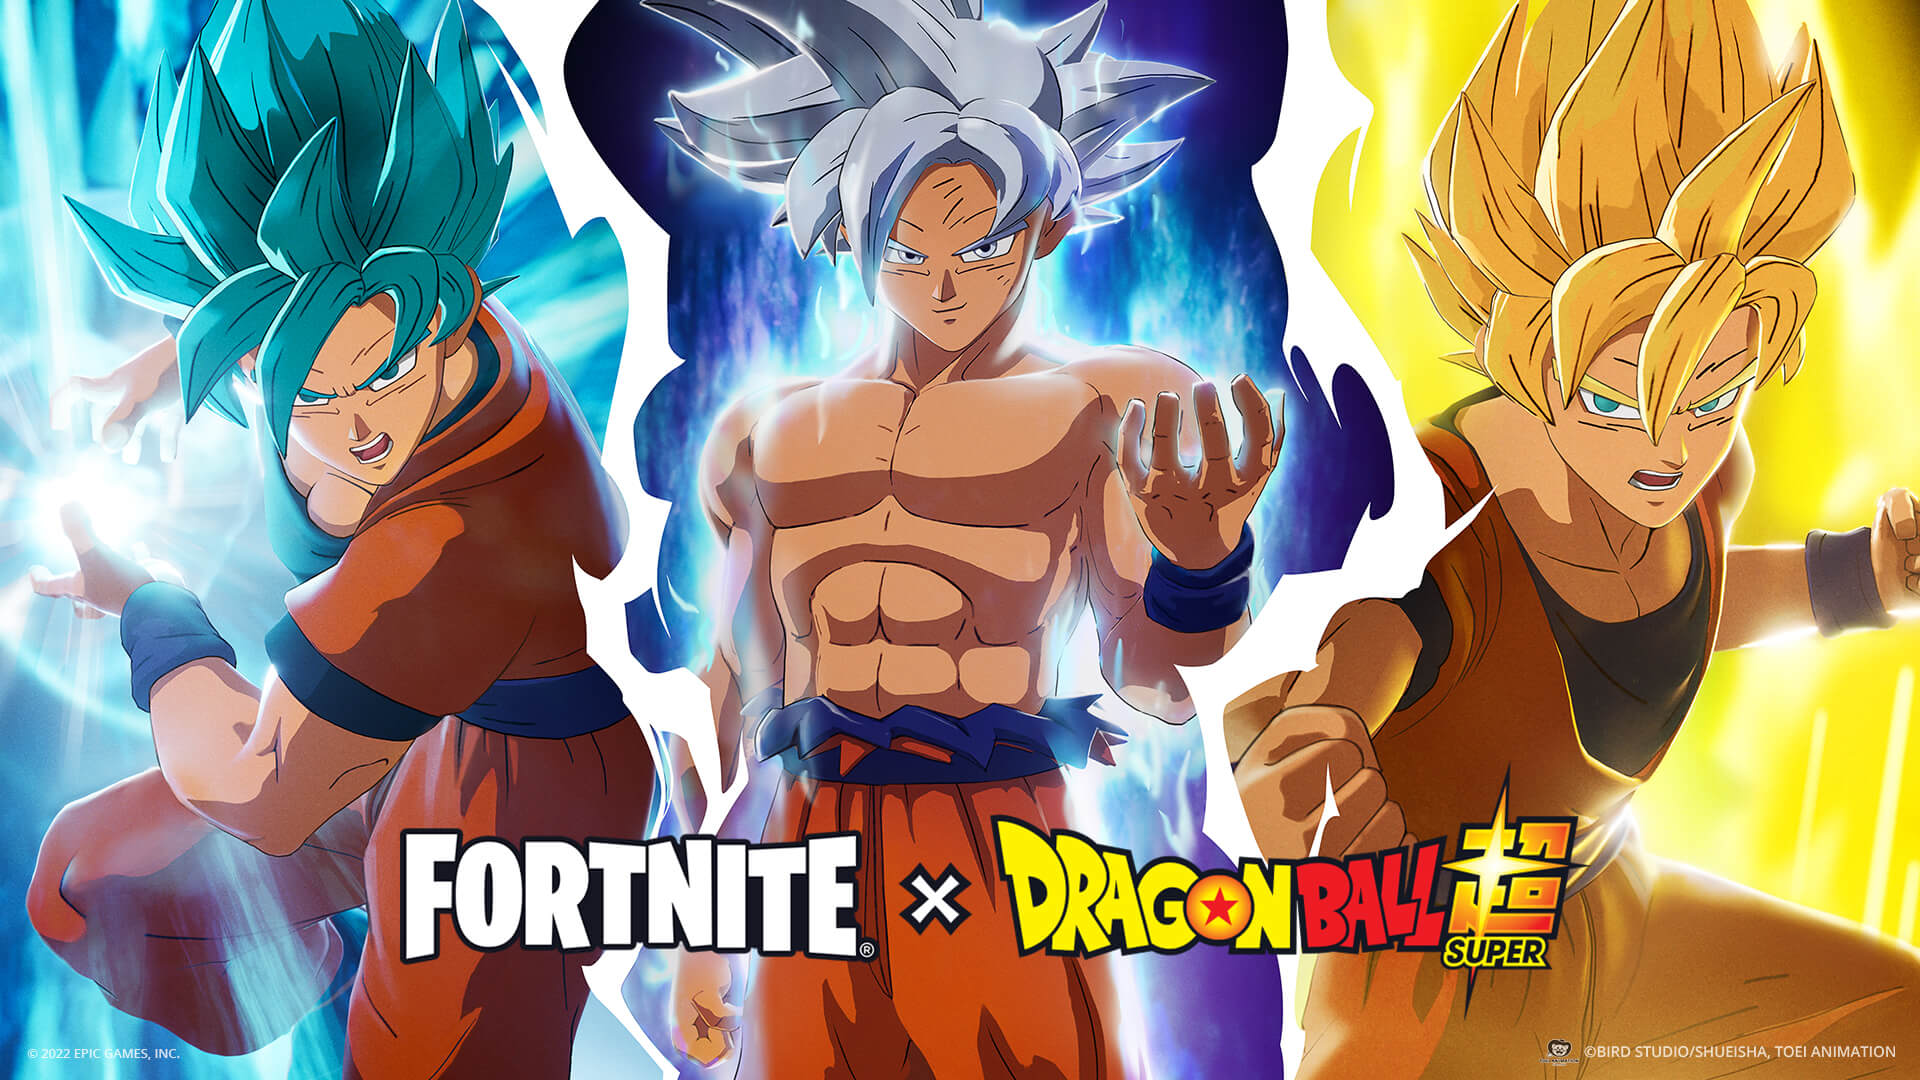 Dragon Ball Super revela nome oficial do novo Instinto de Goku